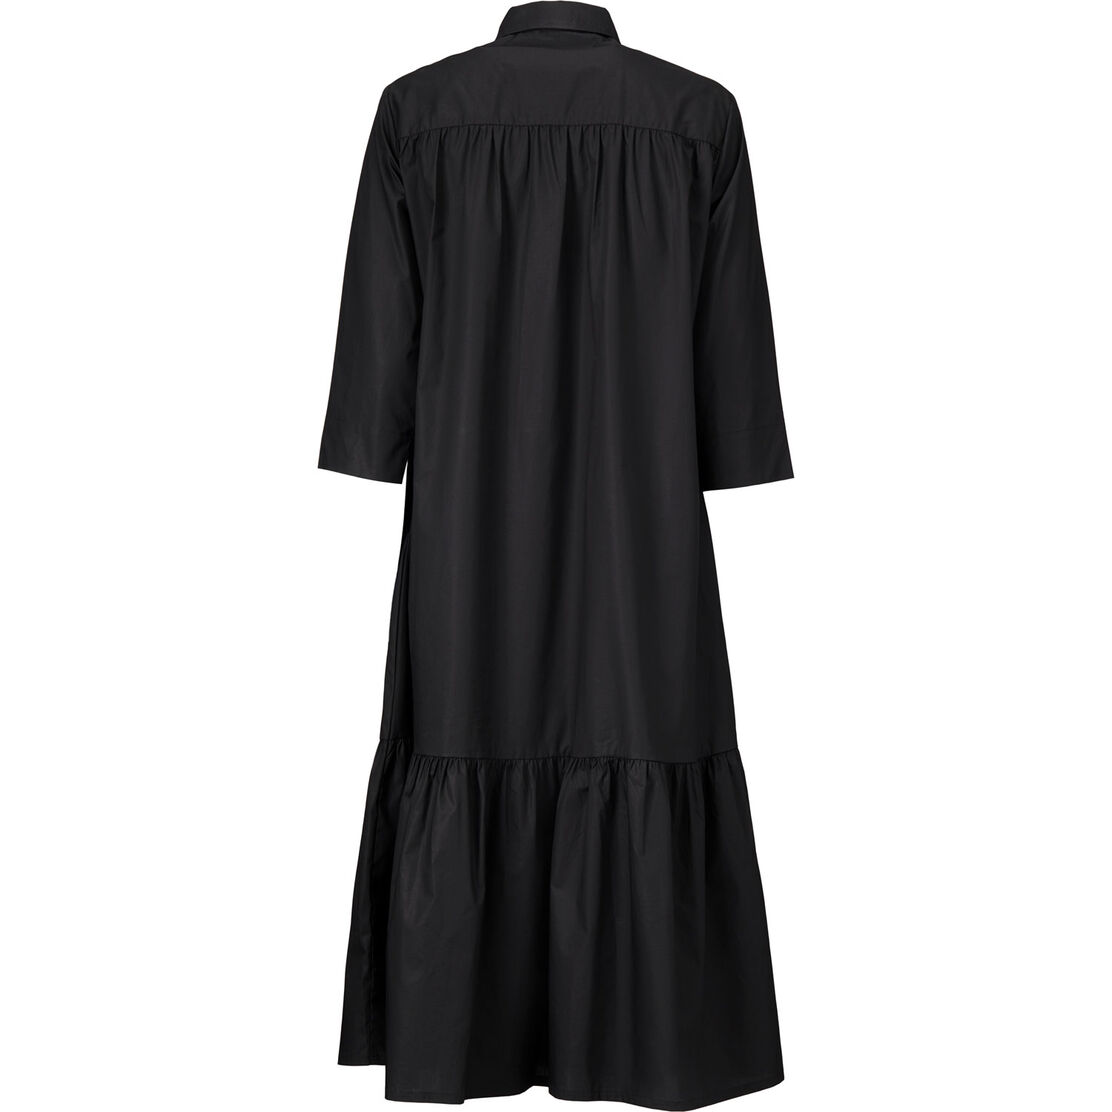 NYDILLA SHIRT DRESS, Black, hi-res